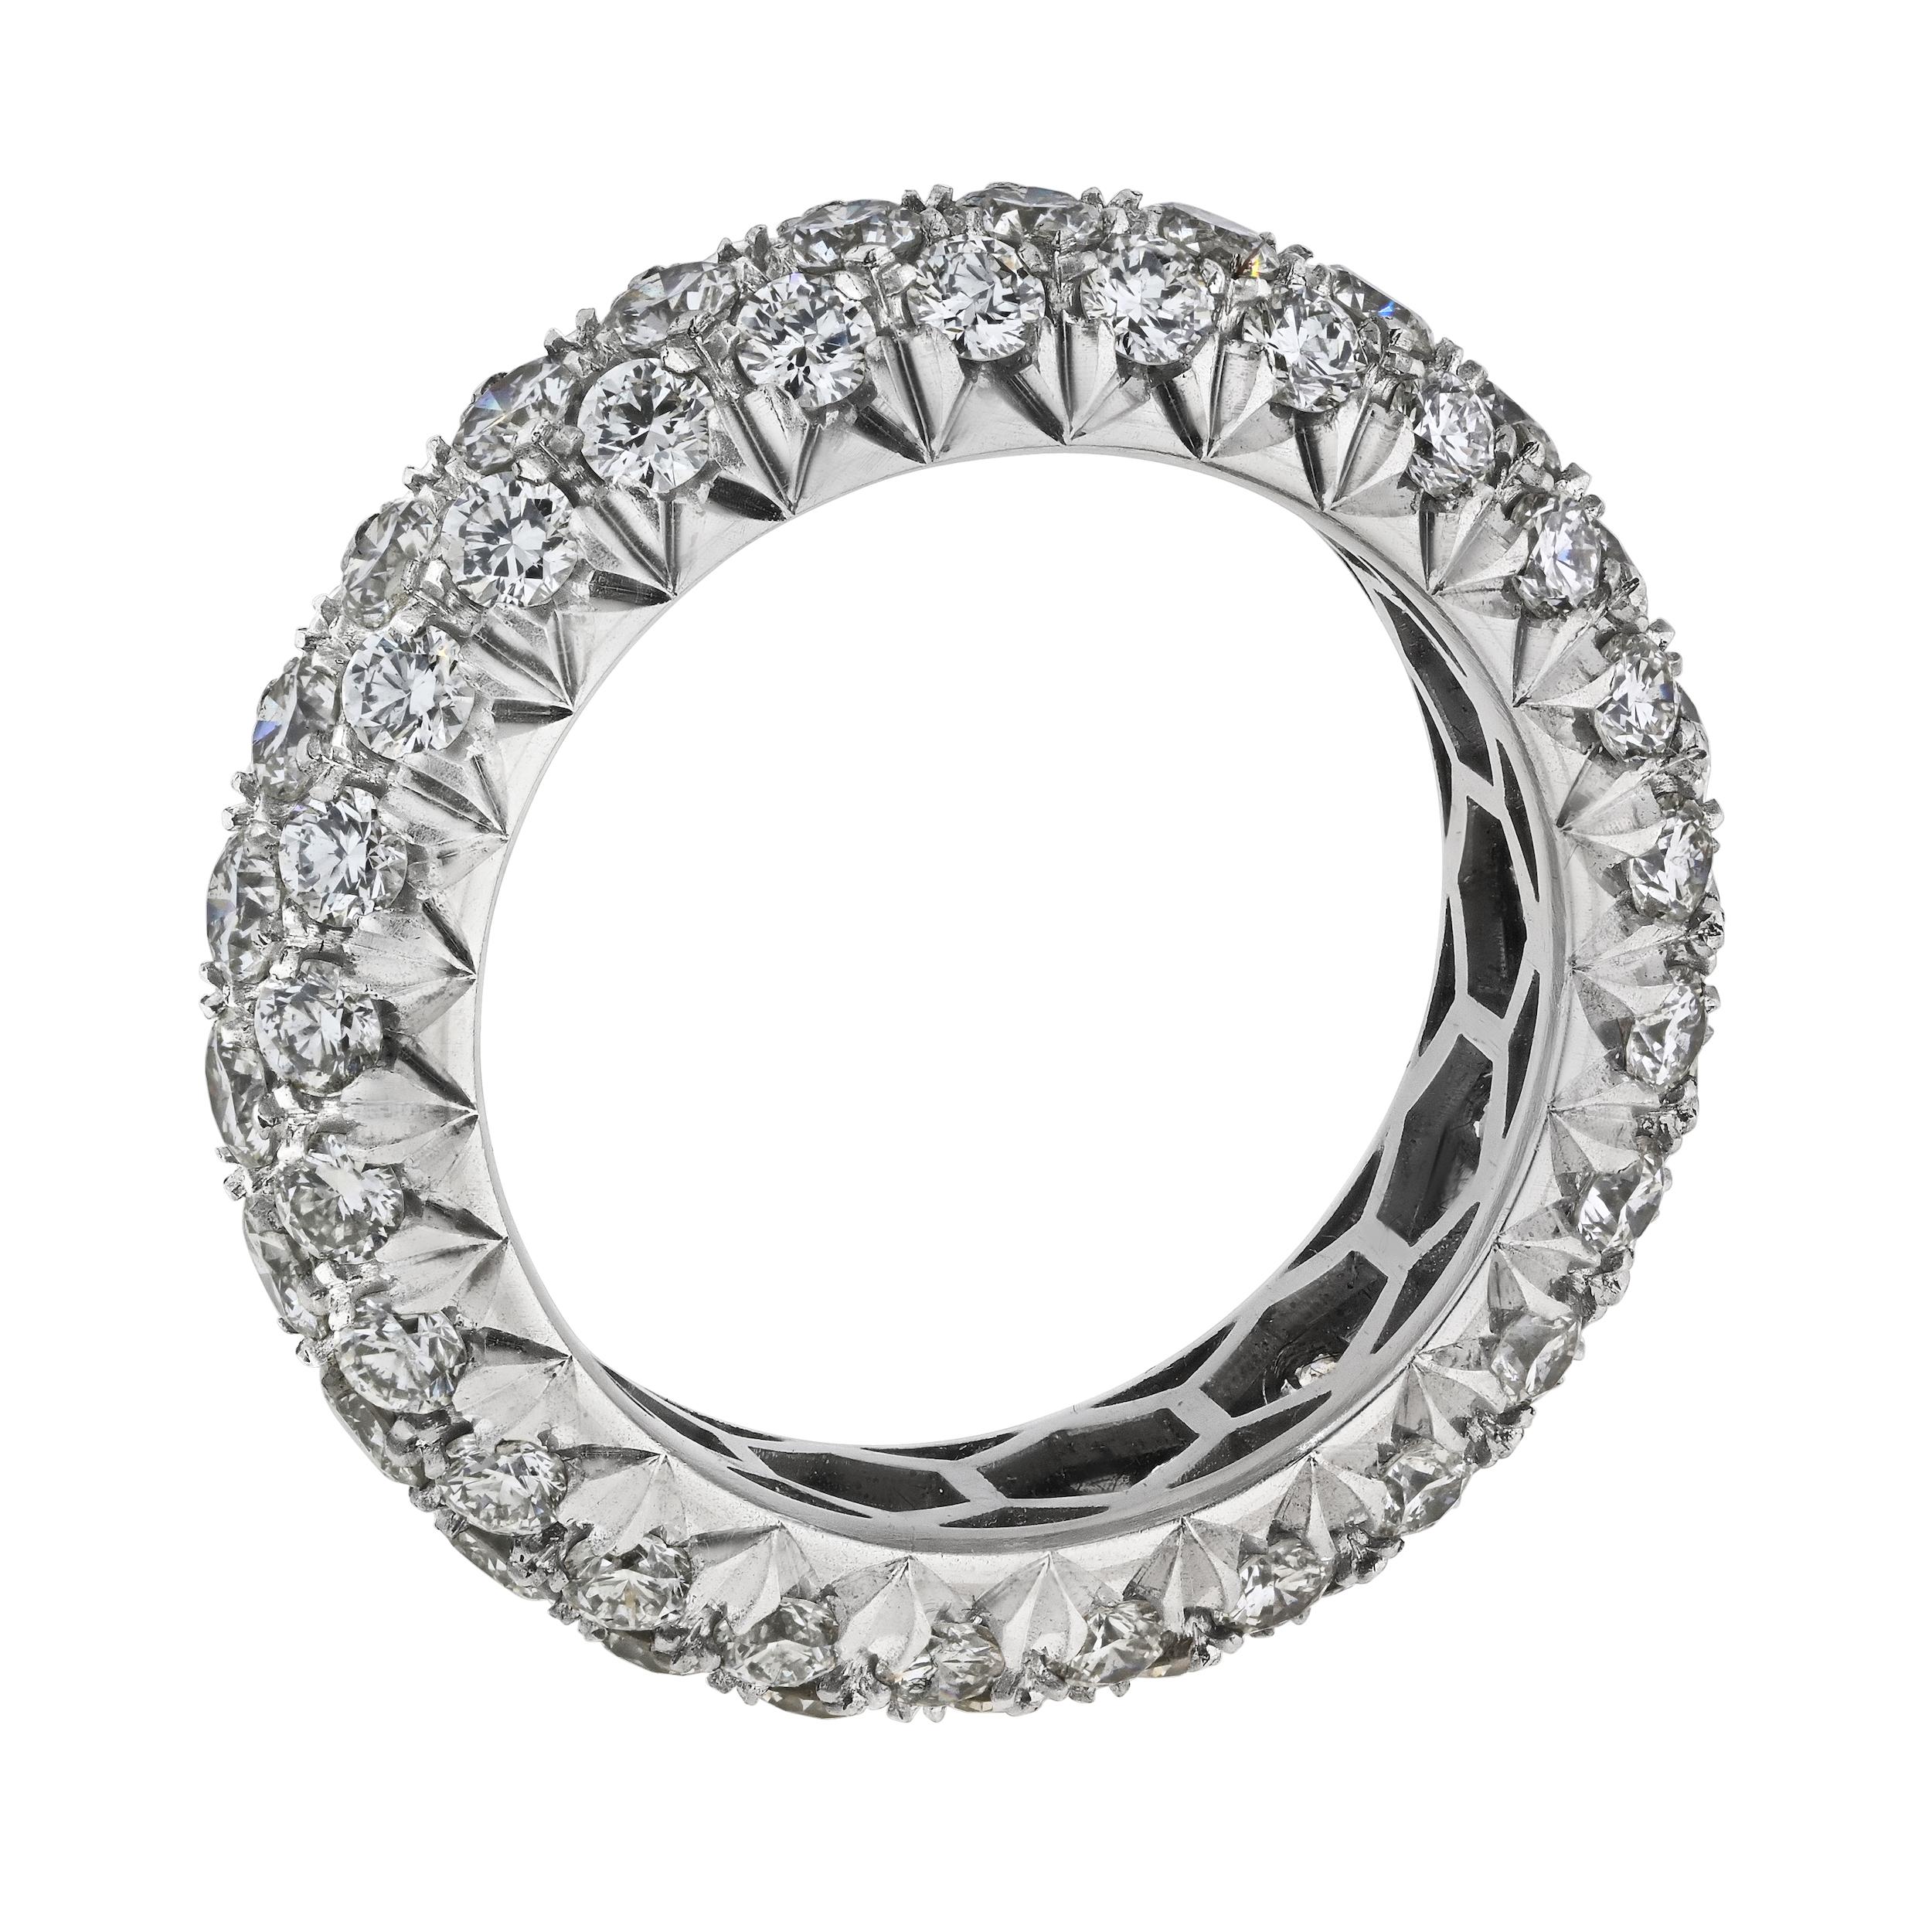 Lassen Sie sich von der zeitlosen Eleganz dieses handgefertigten Platin-Diamantarmbands für die Ewigkeit begeistern. Das kunstvoll gefertigte Band besteht aus drei Reihen runder, pflastergeschliffener Diamanten und besticht durch ein mehrreihiges